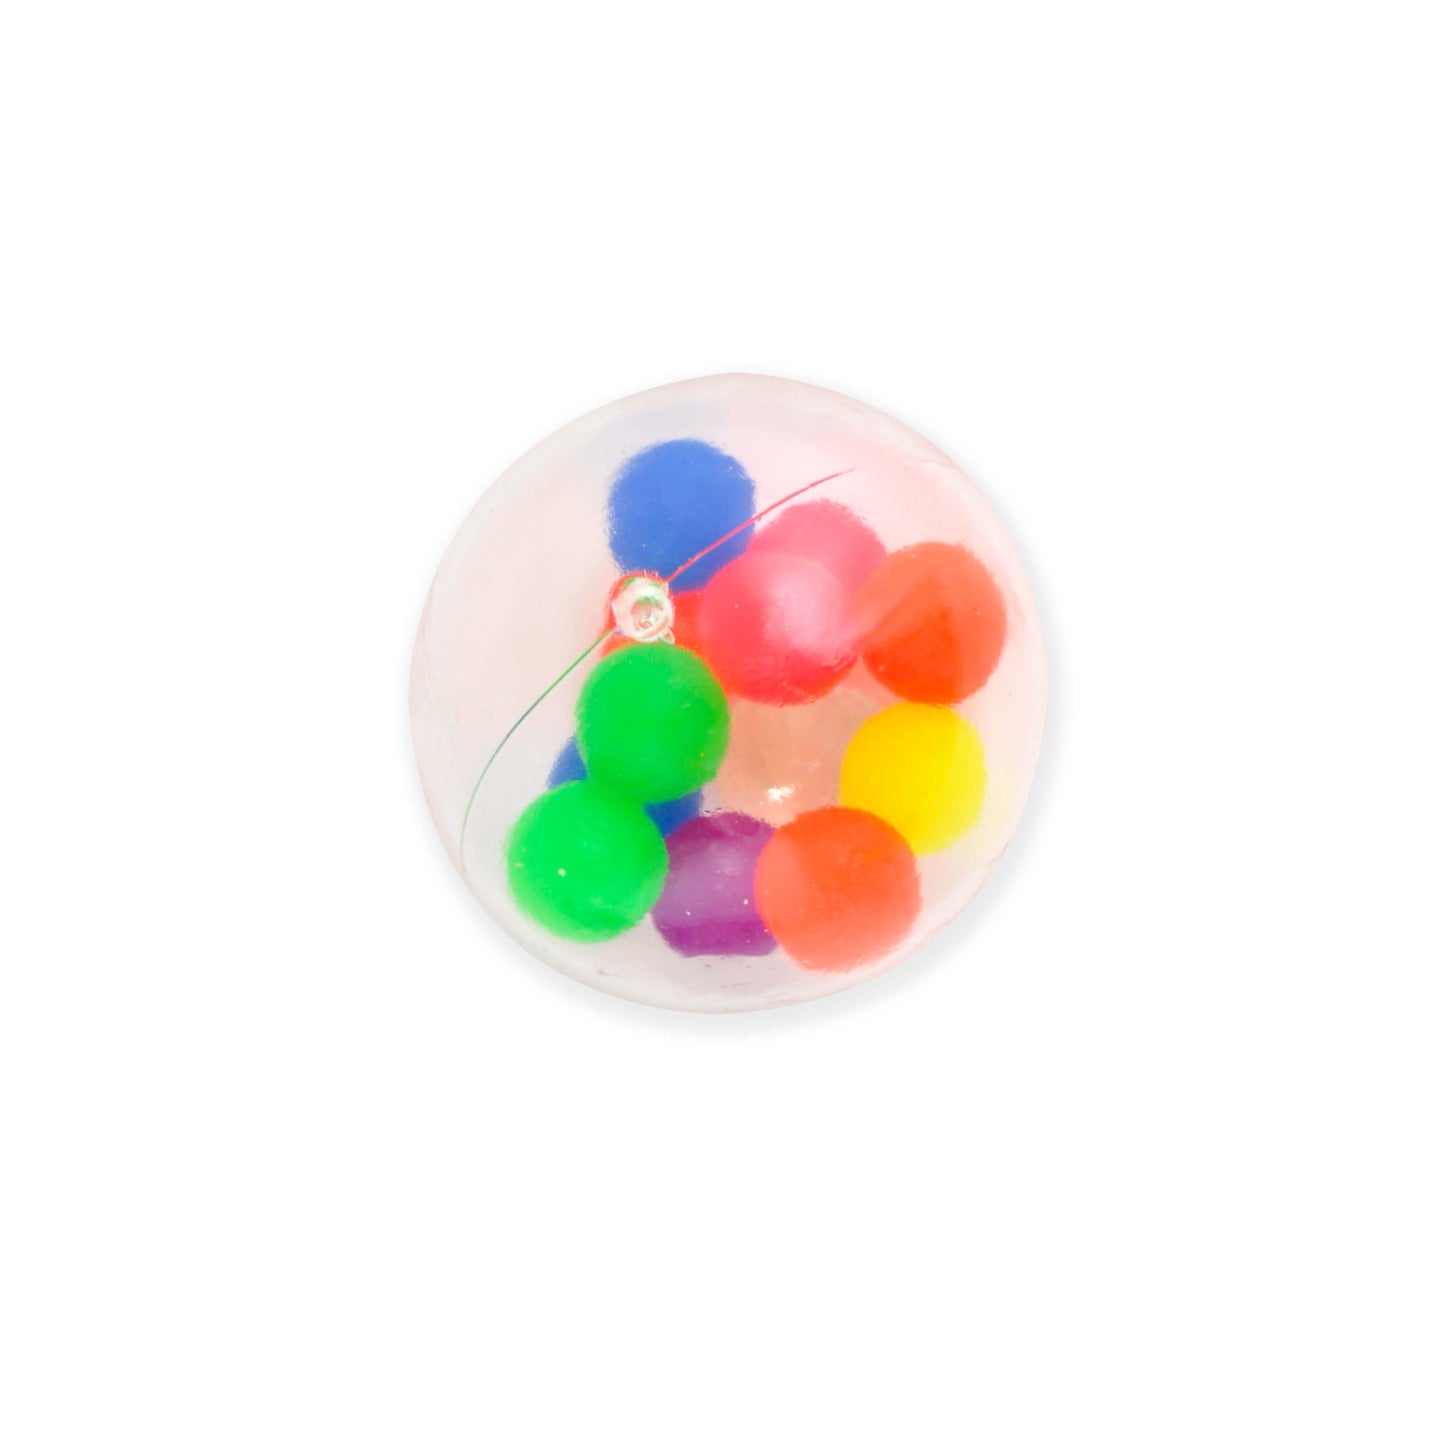 KaiserKids Bubble Squish Ball - MULTI COLOUR